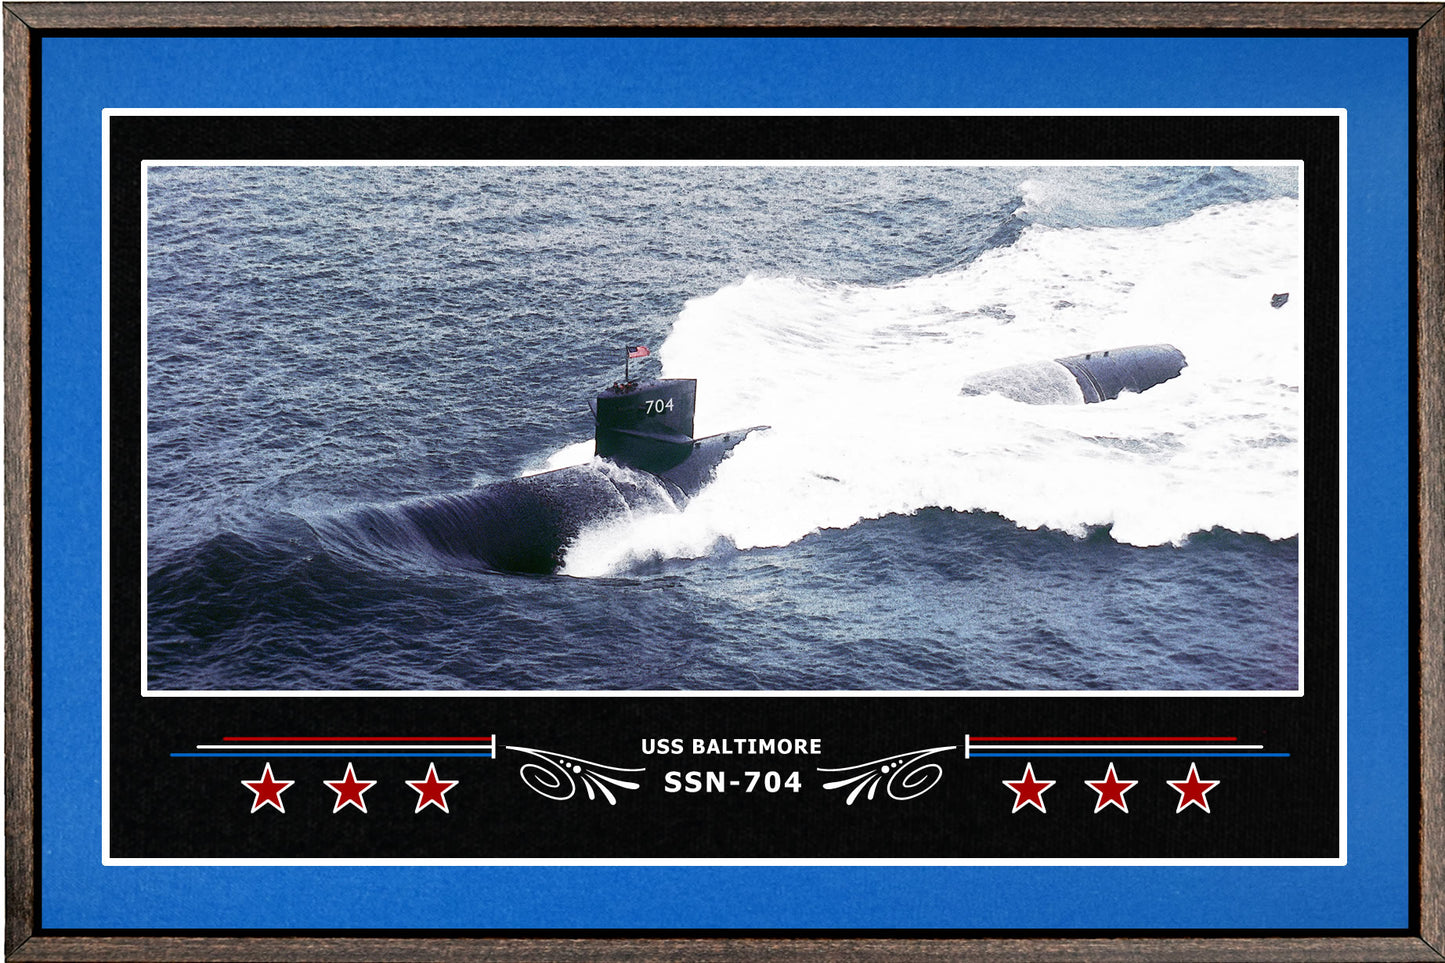 USS BALTIMORE SSN 704 BOX FRAMED CANVAS ART BLUE